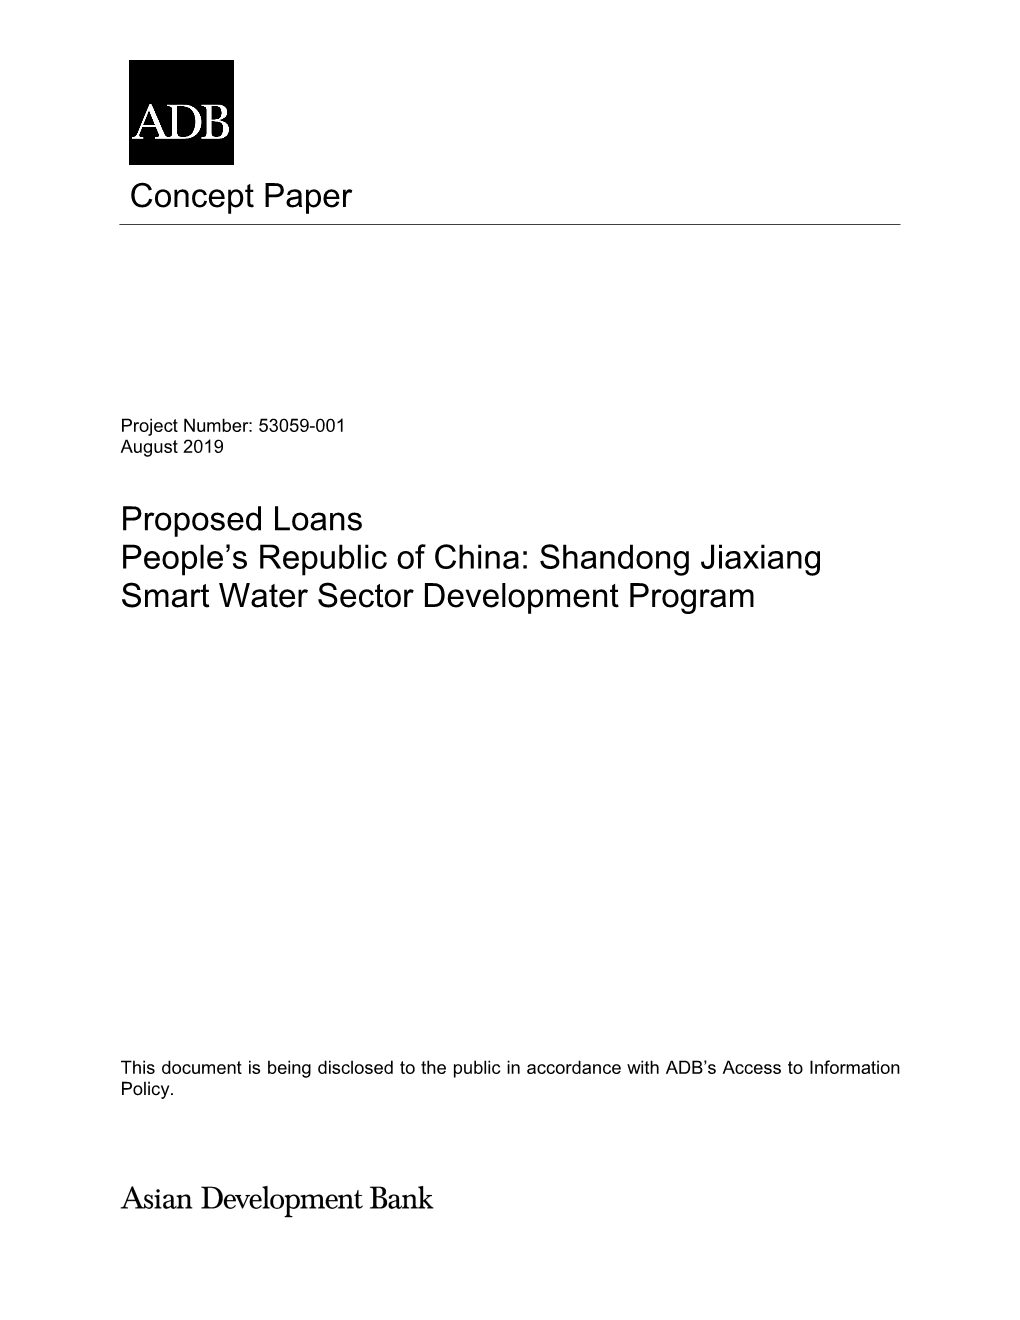 Shandong Jiaxiang Smart Water Sector Development Program